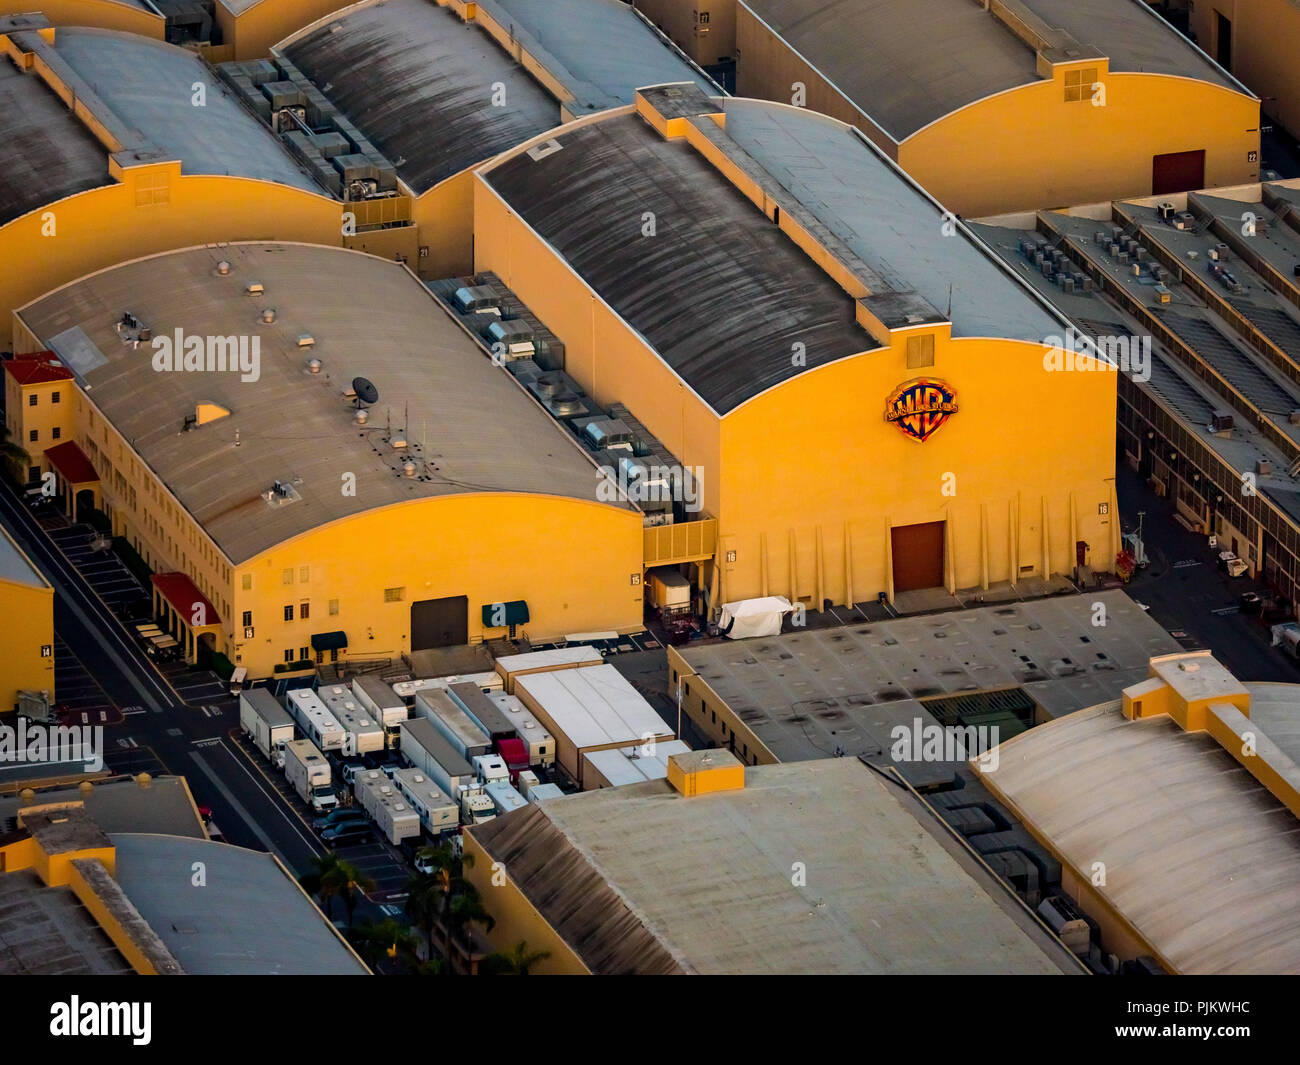 Warner Bros. Studios, Studio City, San Fernando Valley, Los Angeles, Los Angeles County, California, United States Stock Photo